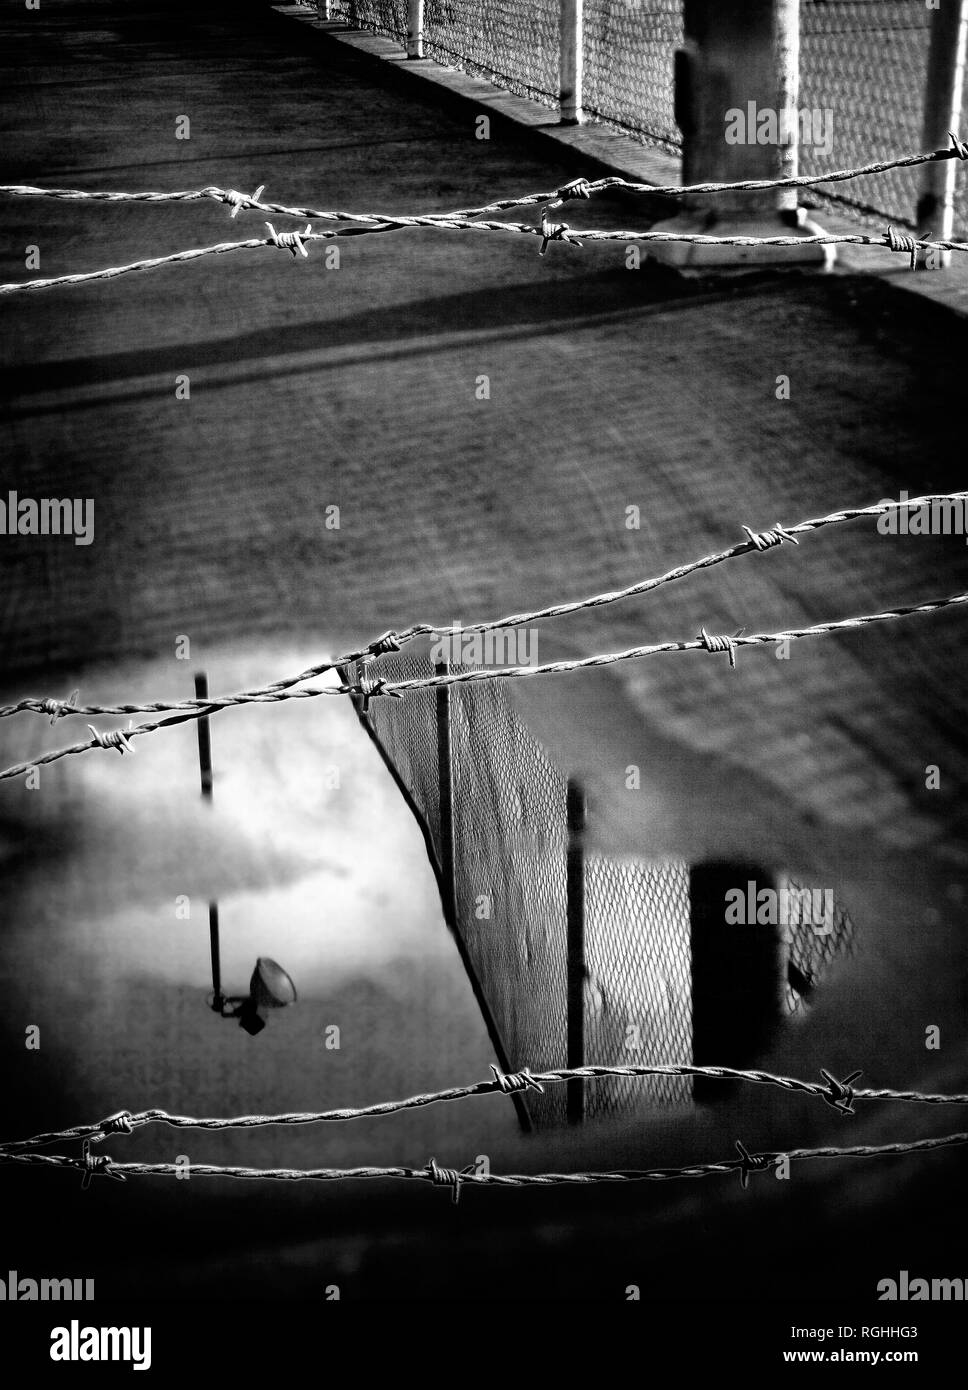 Prigione recinzione e filo spinato riflessa nella piscina di acqua di pioggia monocromatici in bianco e nero Foto Stock